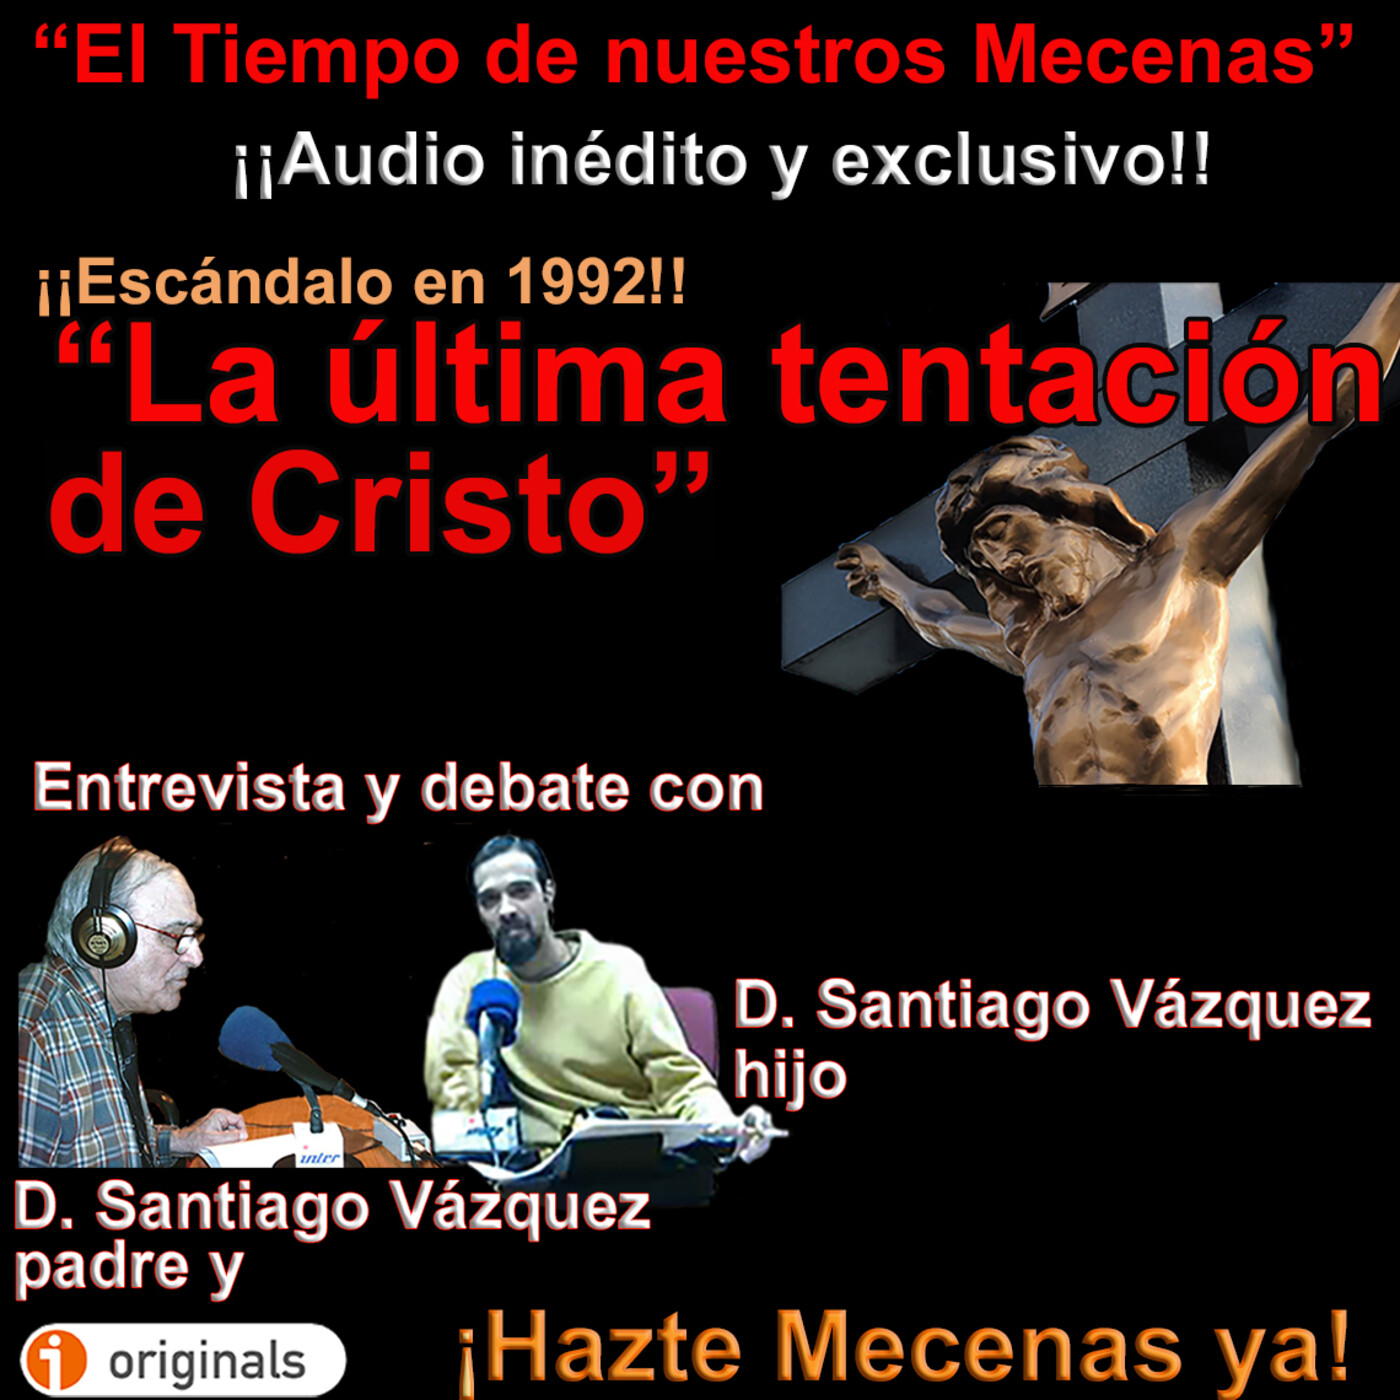 1992: Escándalo en España &#8220;La última tentación de Cristo&#8221; - - Episodio exclusivo para mecenas